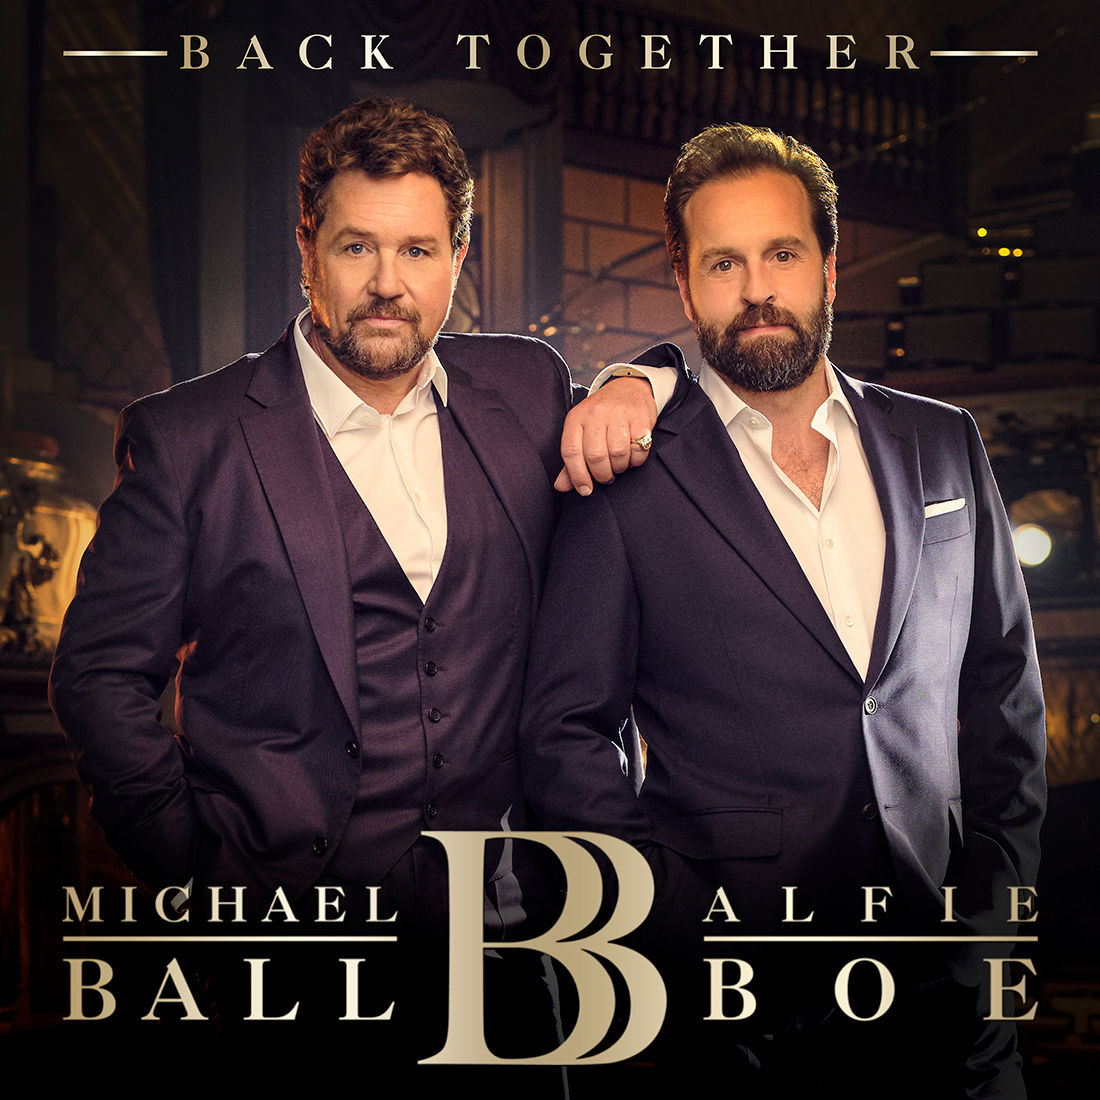 Michael Ball, Alfie Boe - Back Together Signed CD